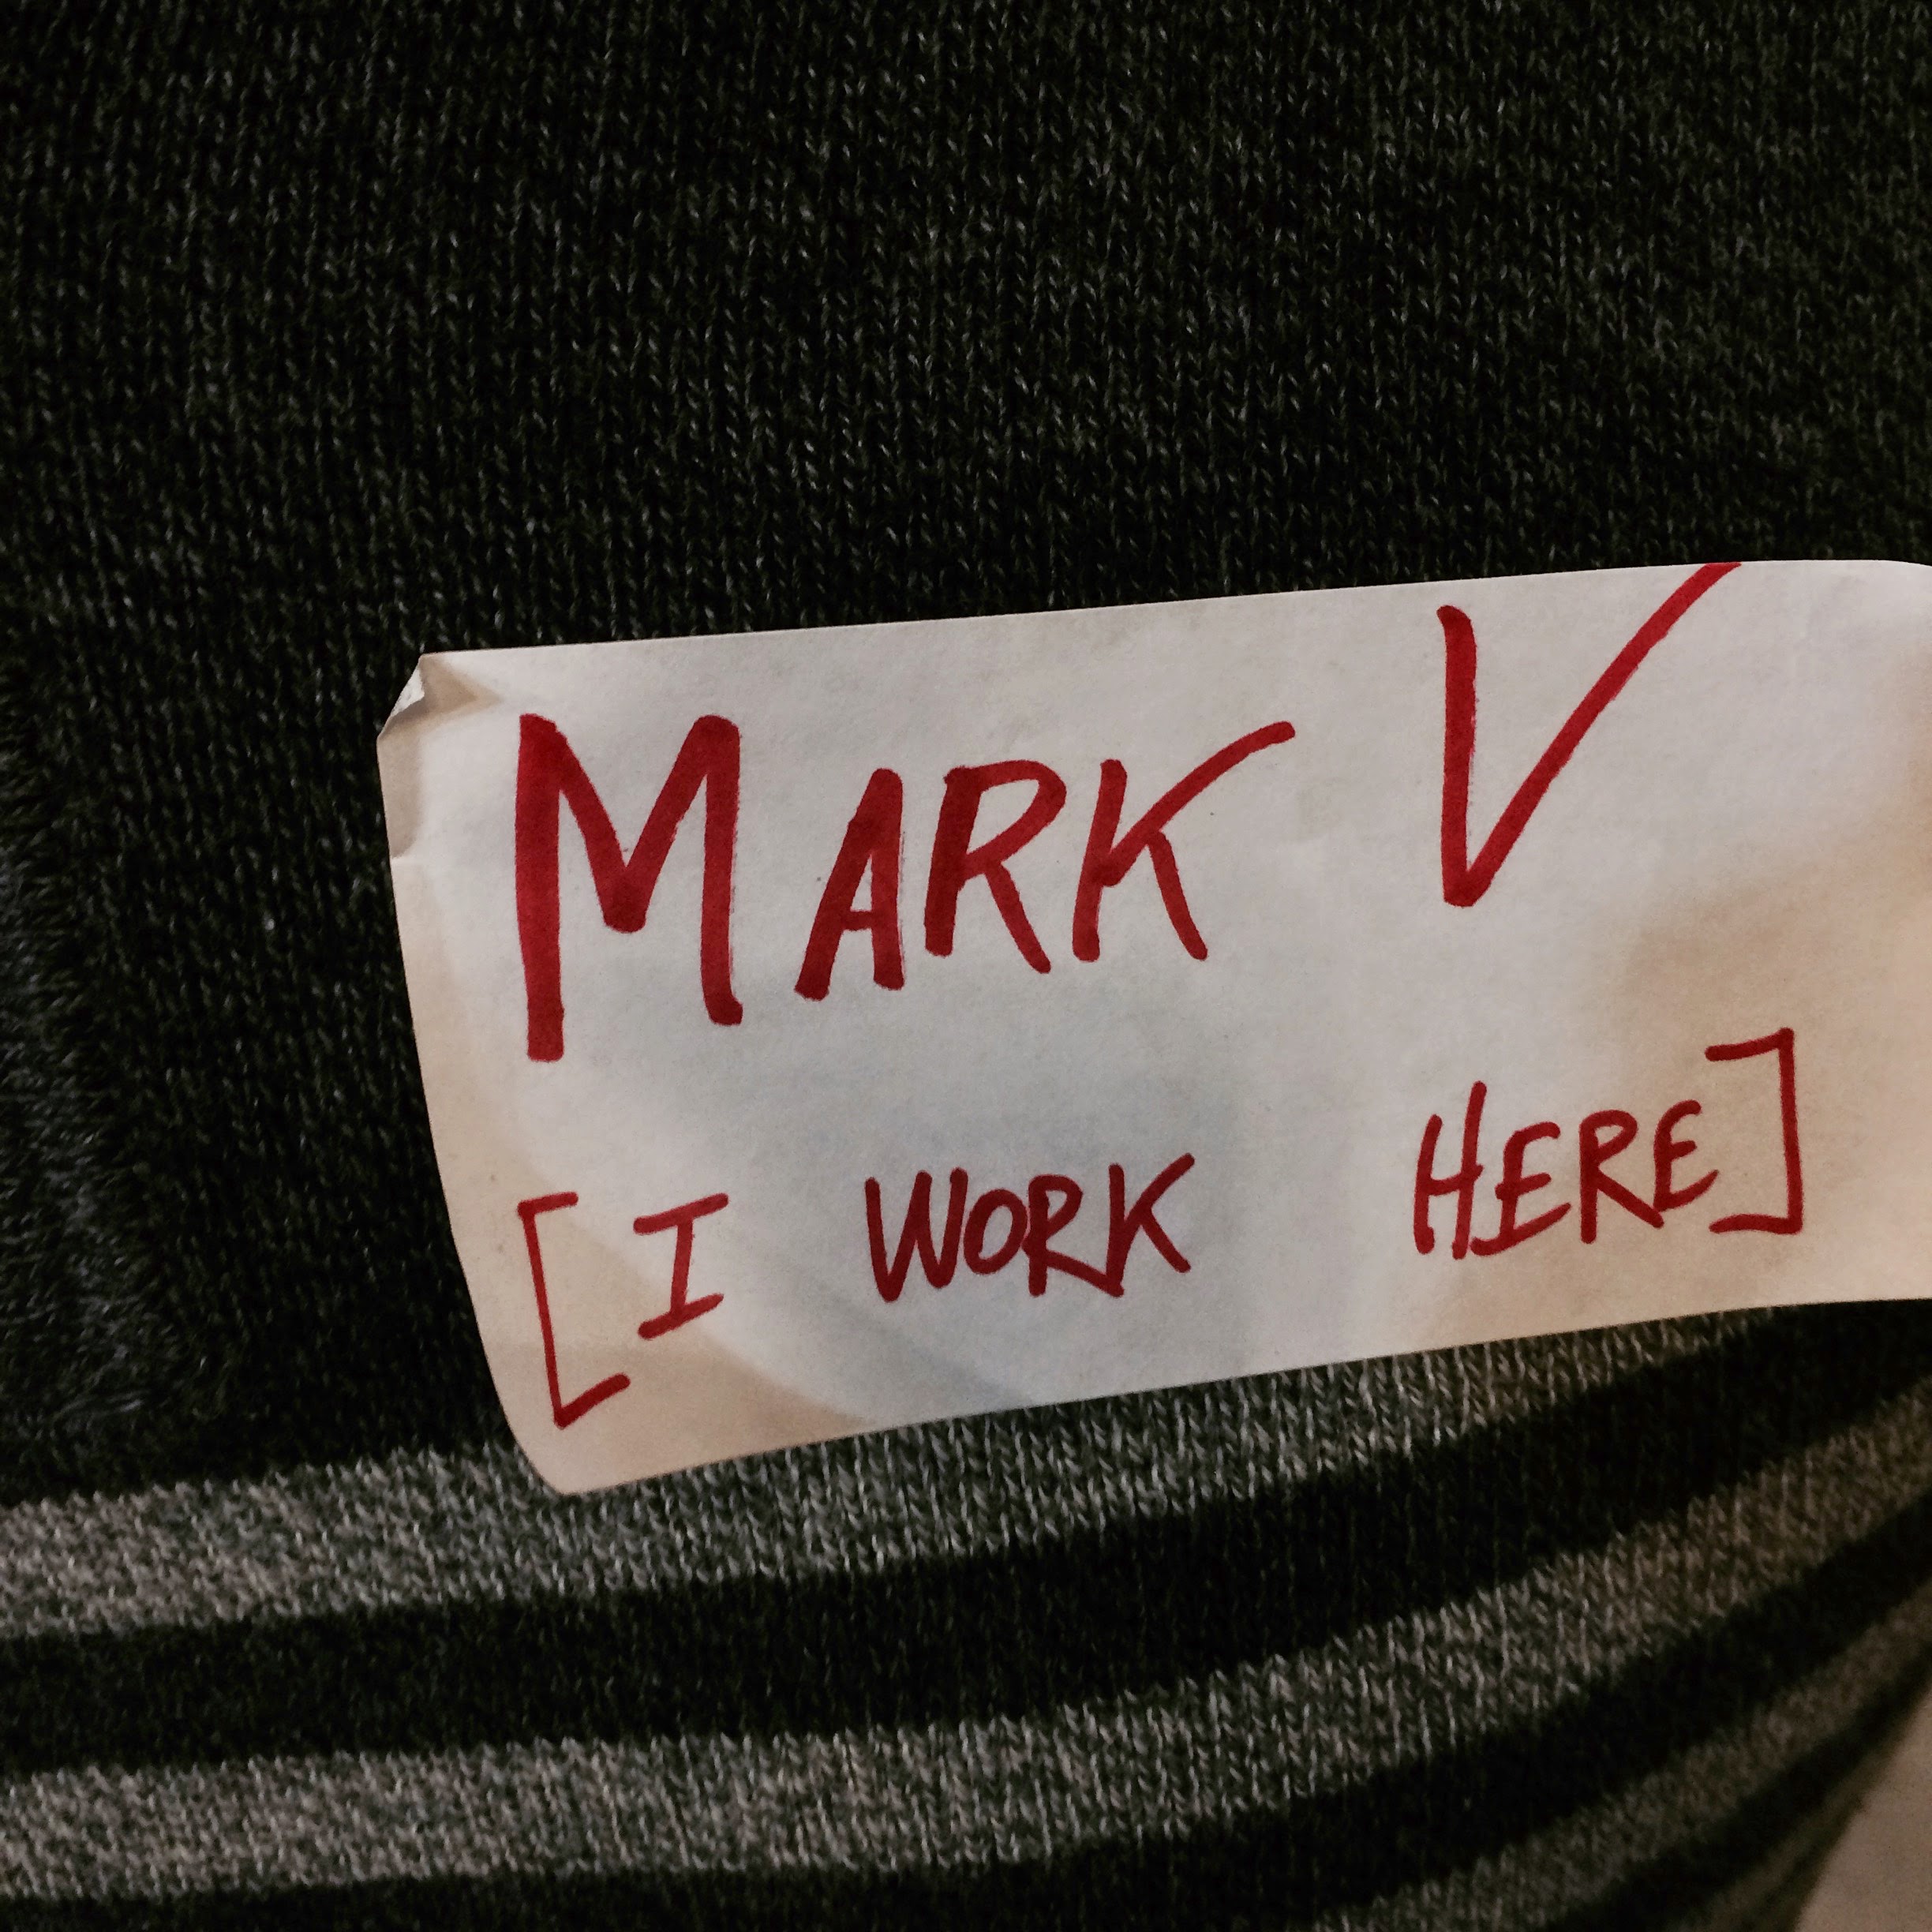 Meet Mark V